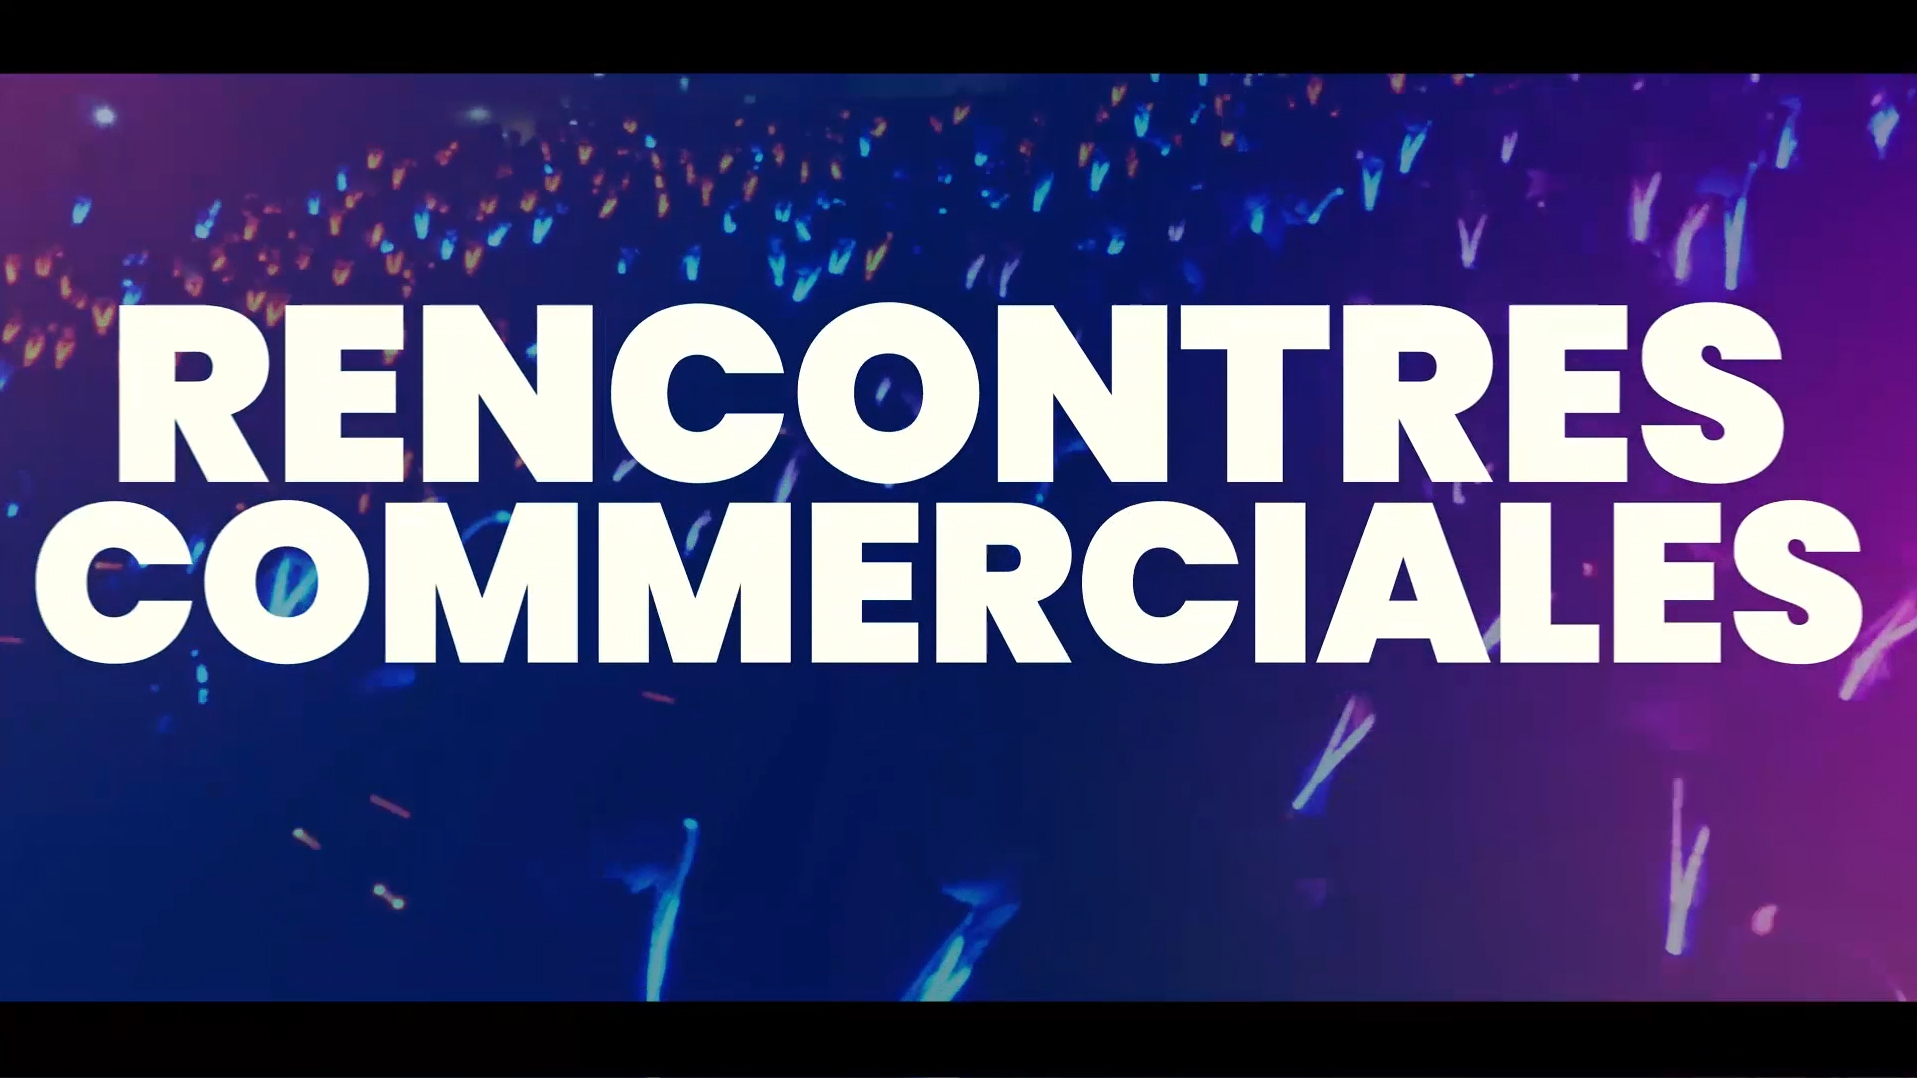 Rencontres Commerciales - 2019 - Séville - Teaser